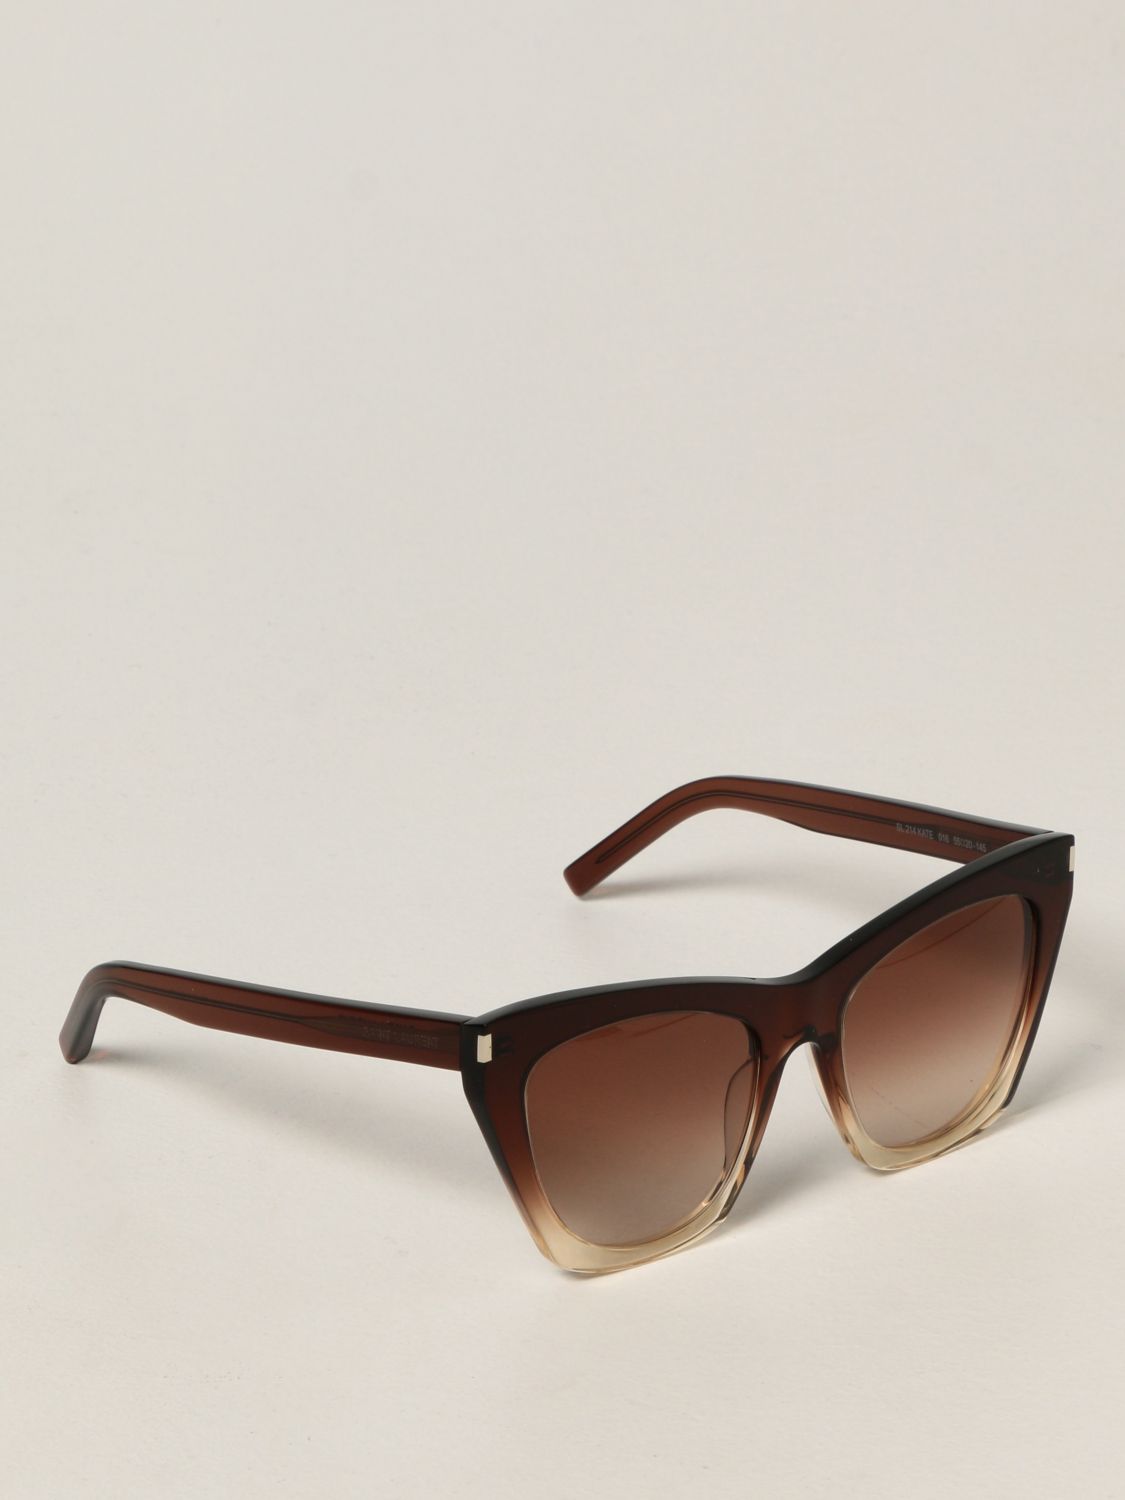 Sunglasses Saint Laurent de color Marrón Mujer Accesorios de Gafas de sol de 